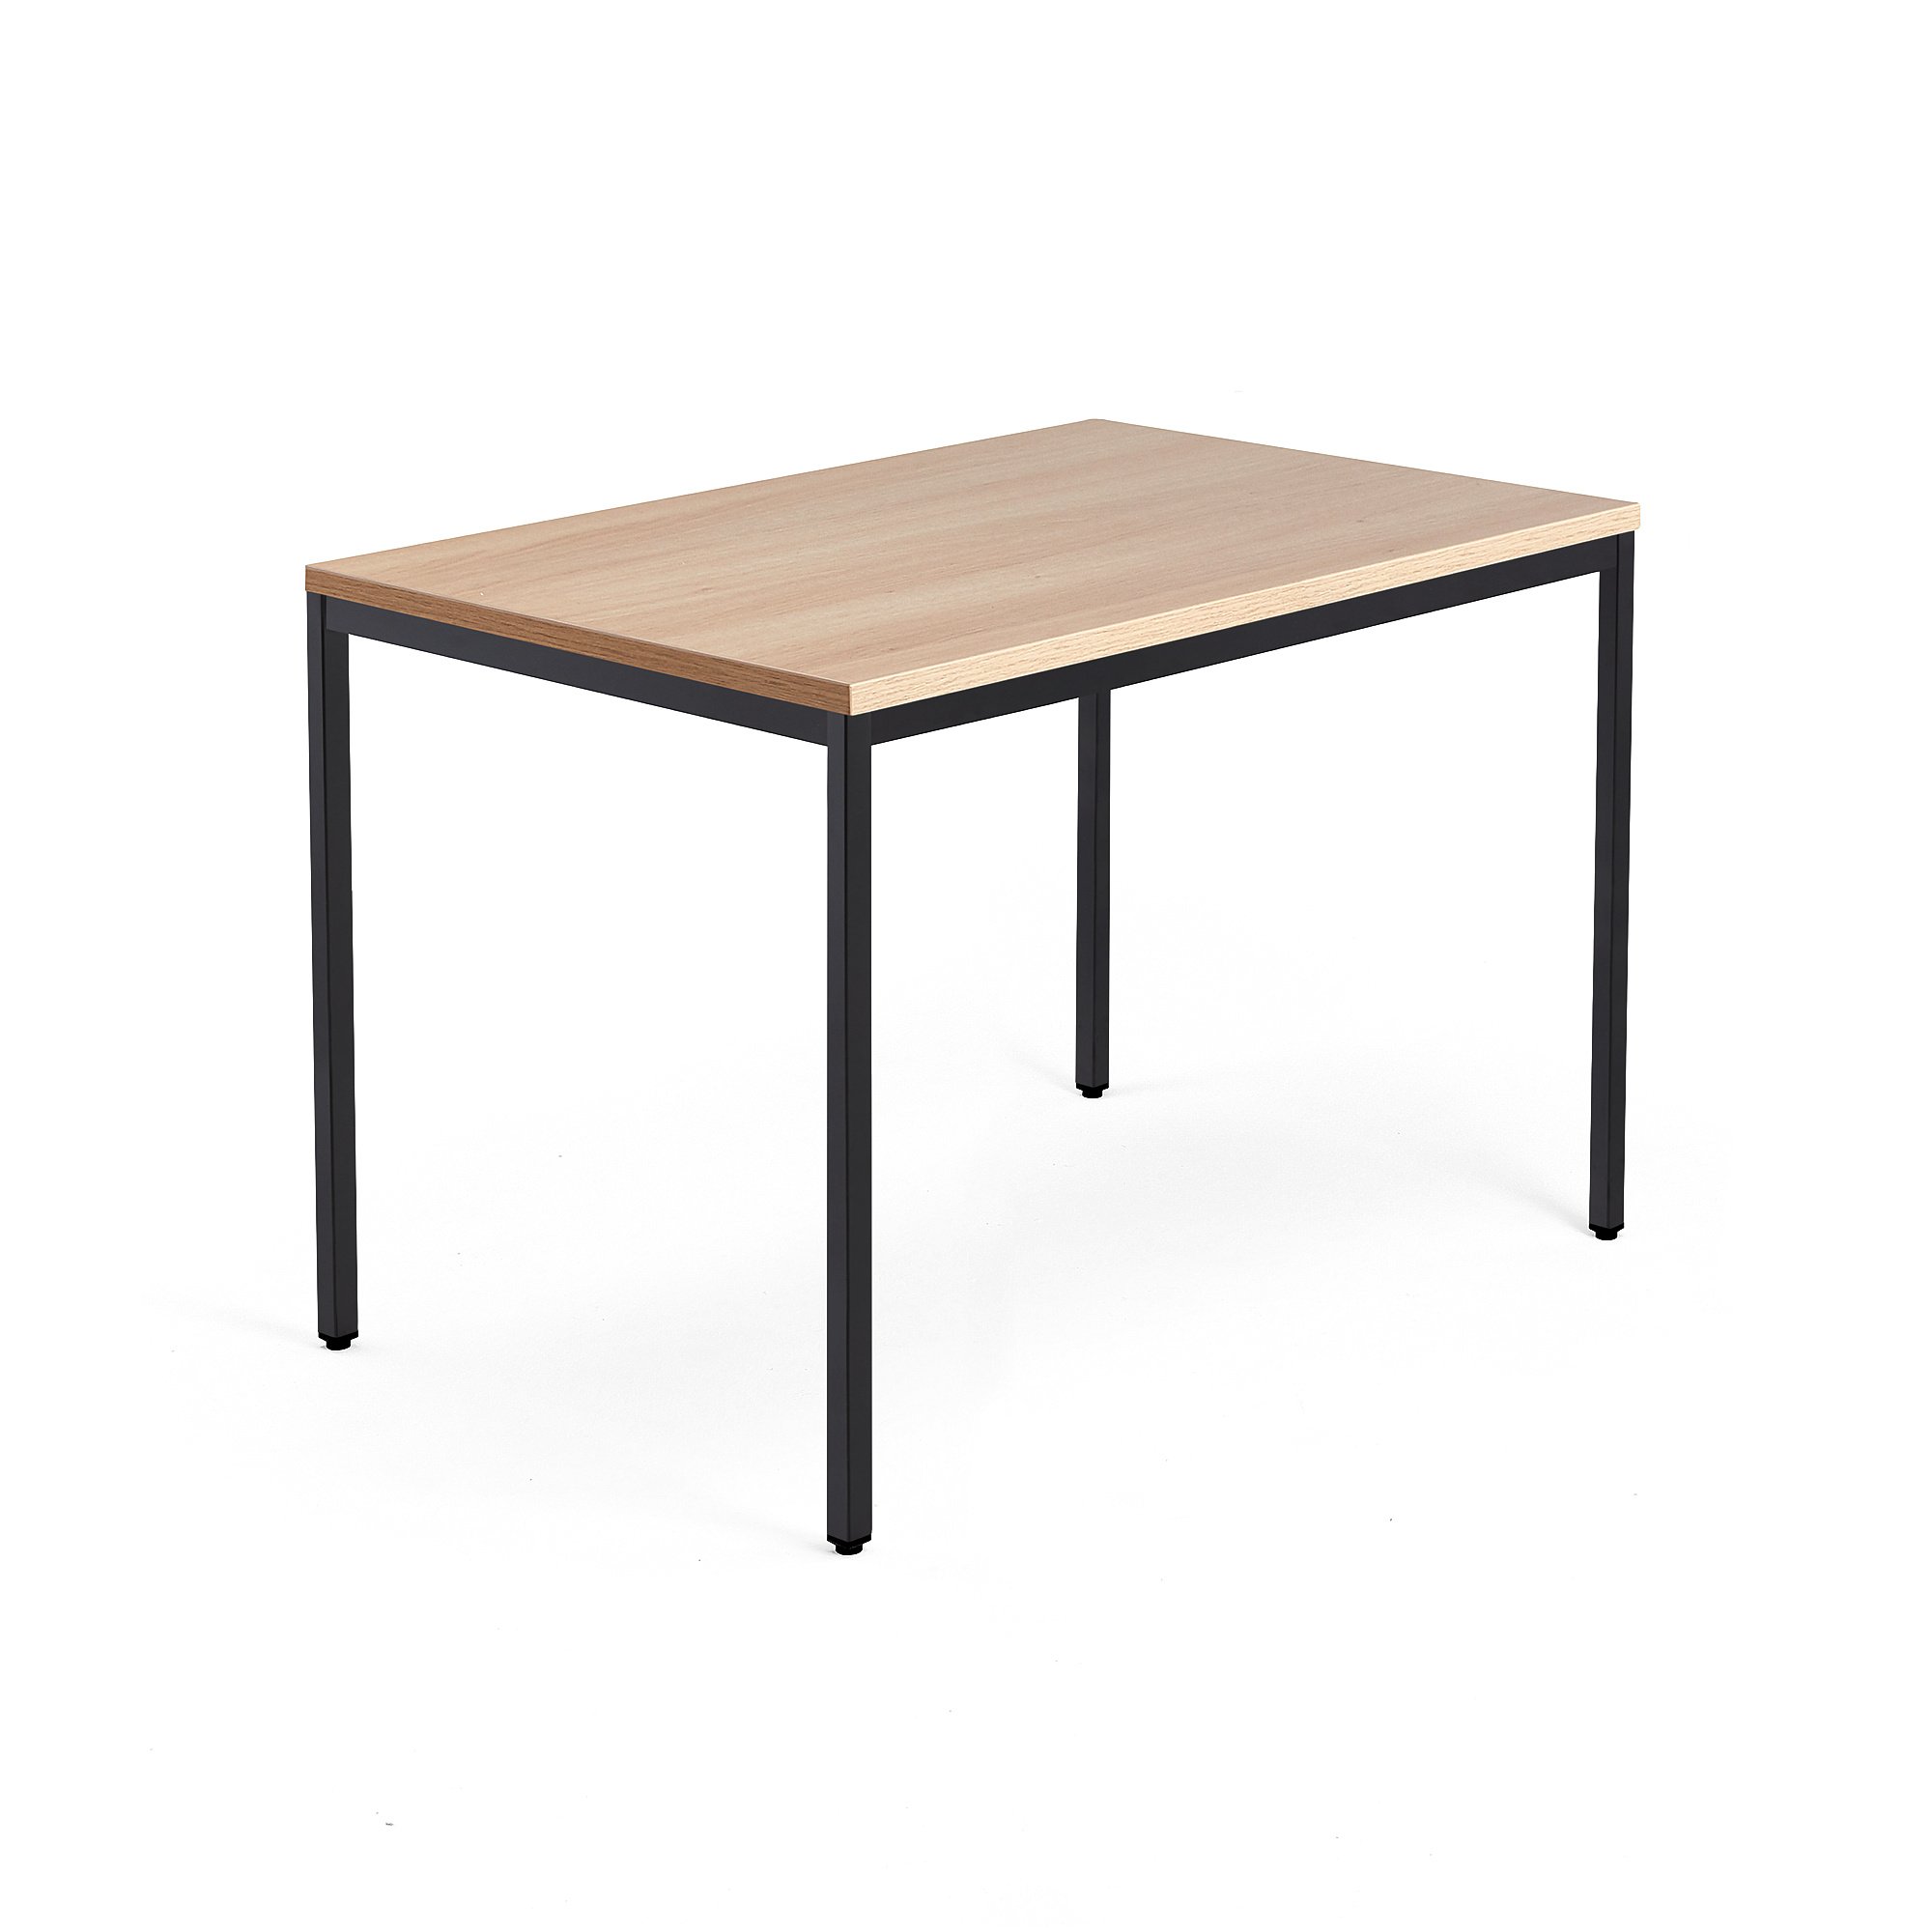 Psací stůl QBUS, 4 nohy, 1200x800 mm, černý rám, dub